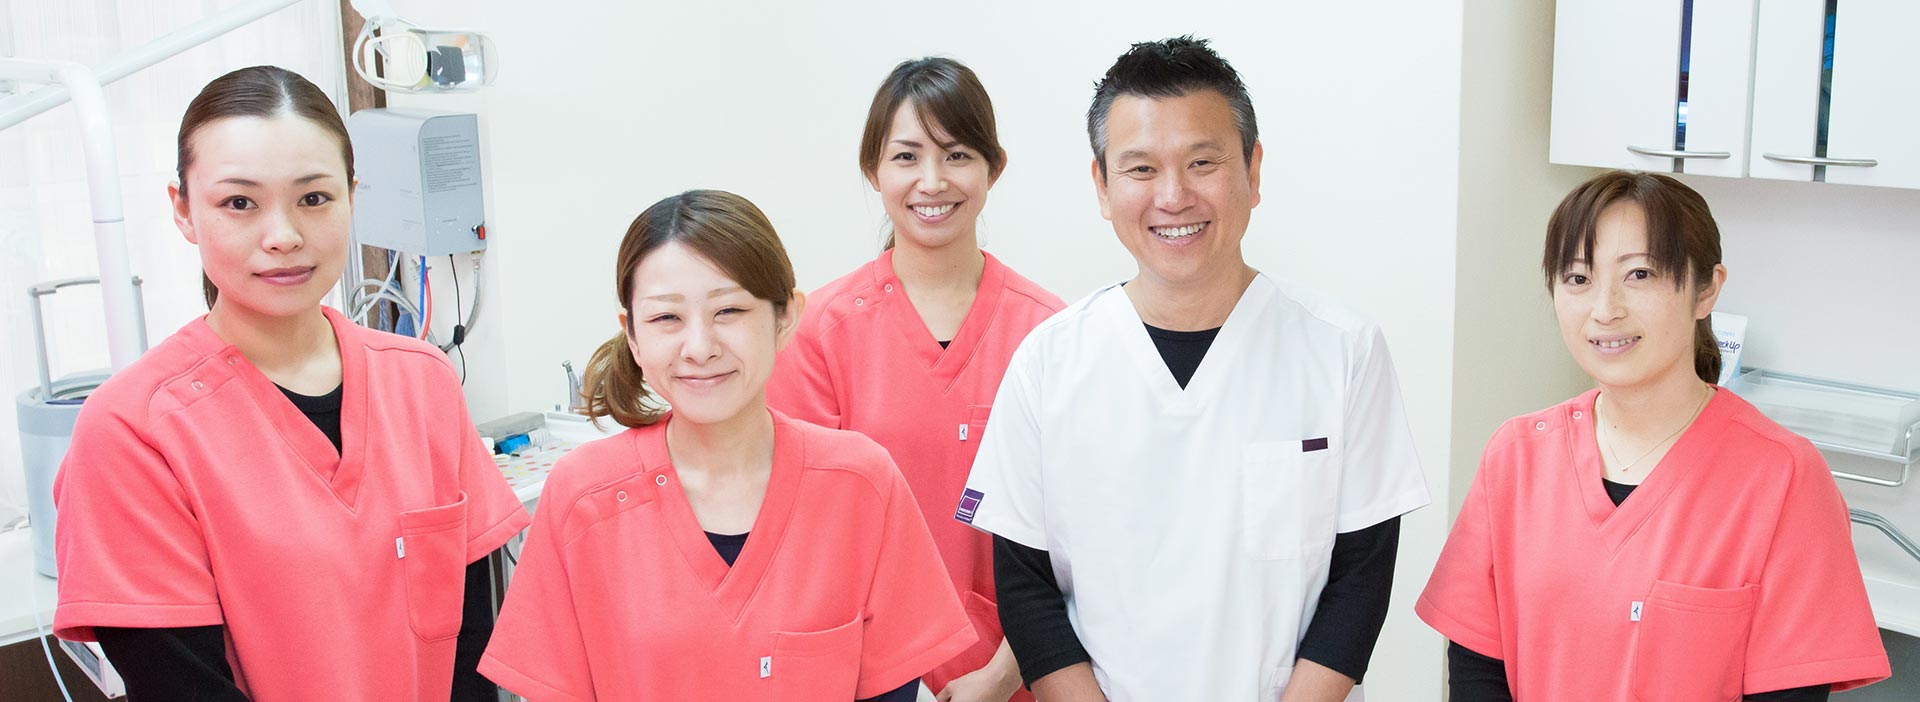 天野歯科医院（富士吉田市）のスタッフ一同。天野歯科医院では笑顔を絶やさず、患者様のお声に耳を傾け、緊張されている患者様でも話しやすい雰囲気を心がけております。